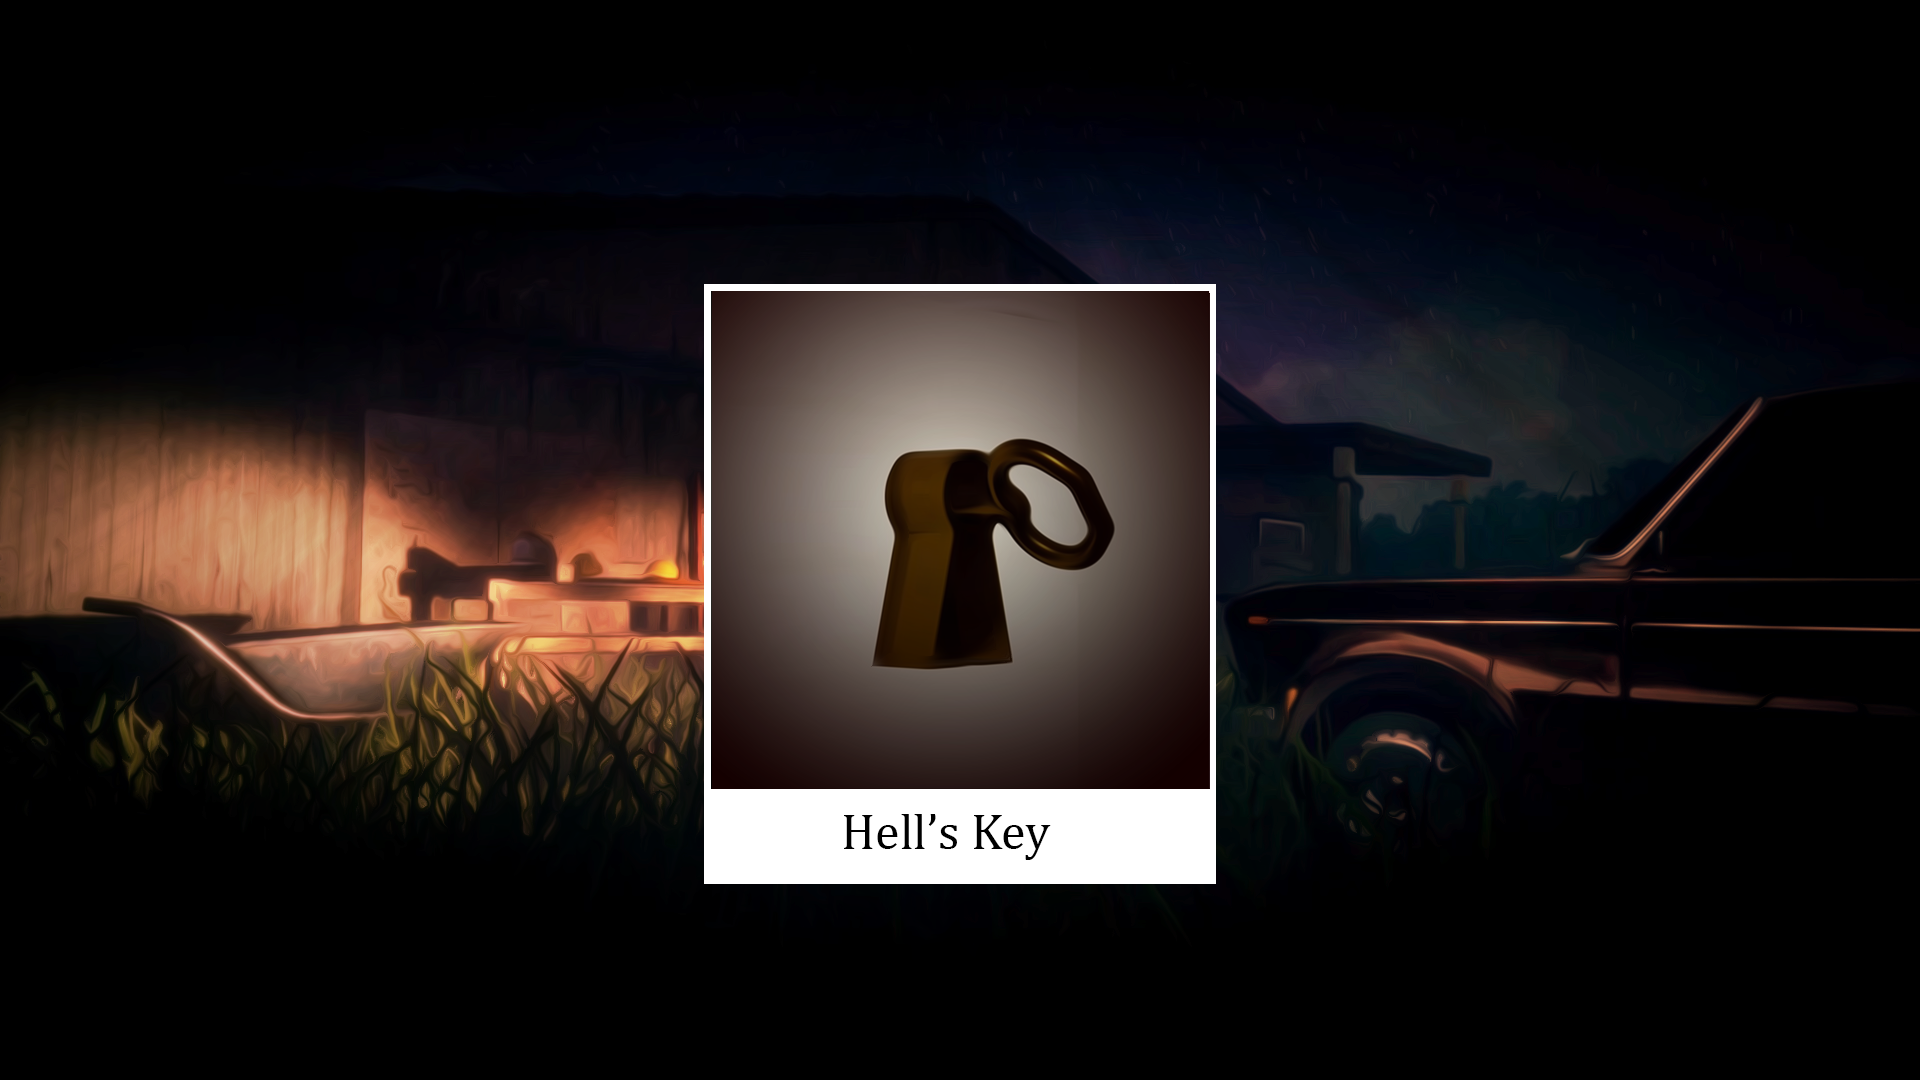 Hell's key